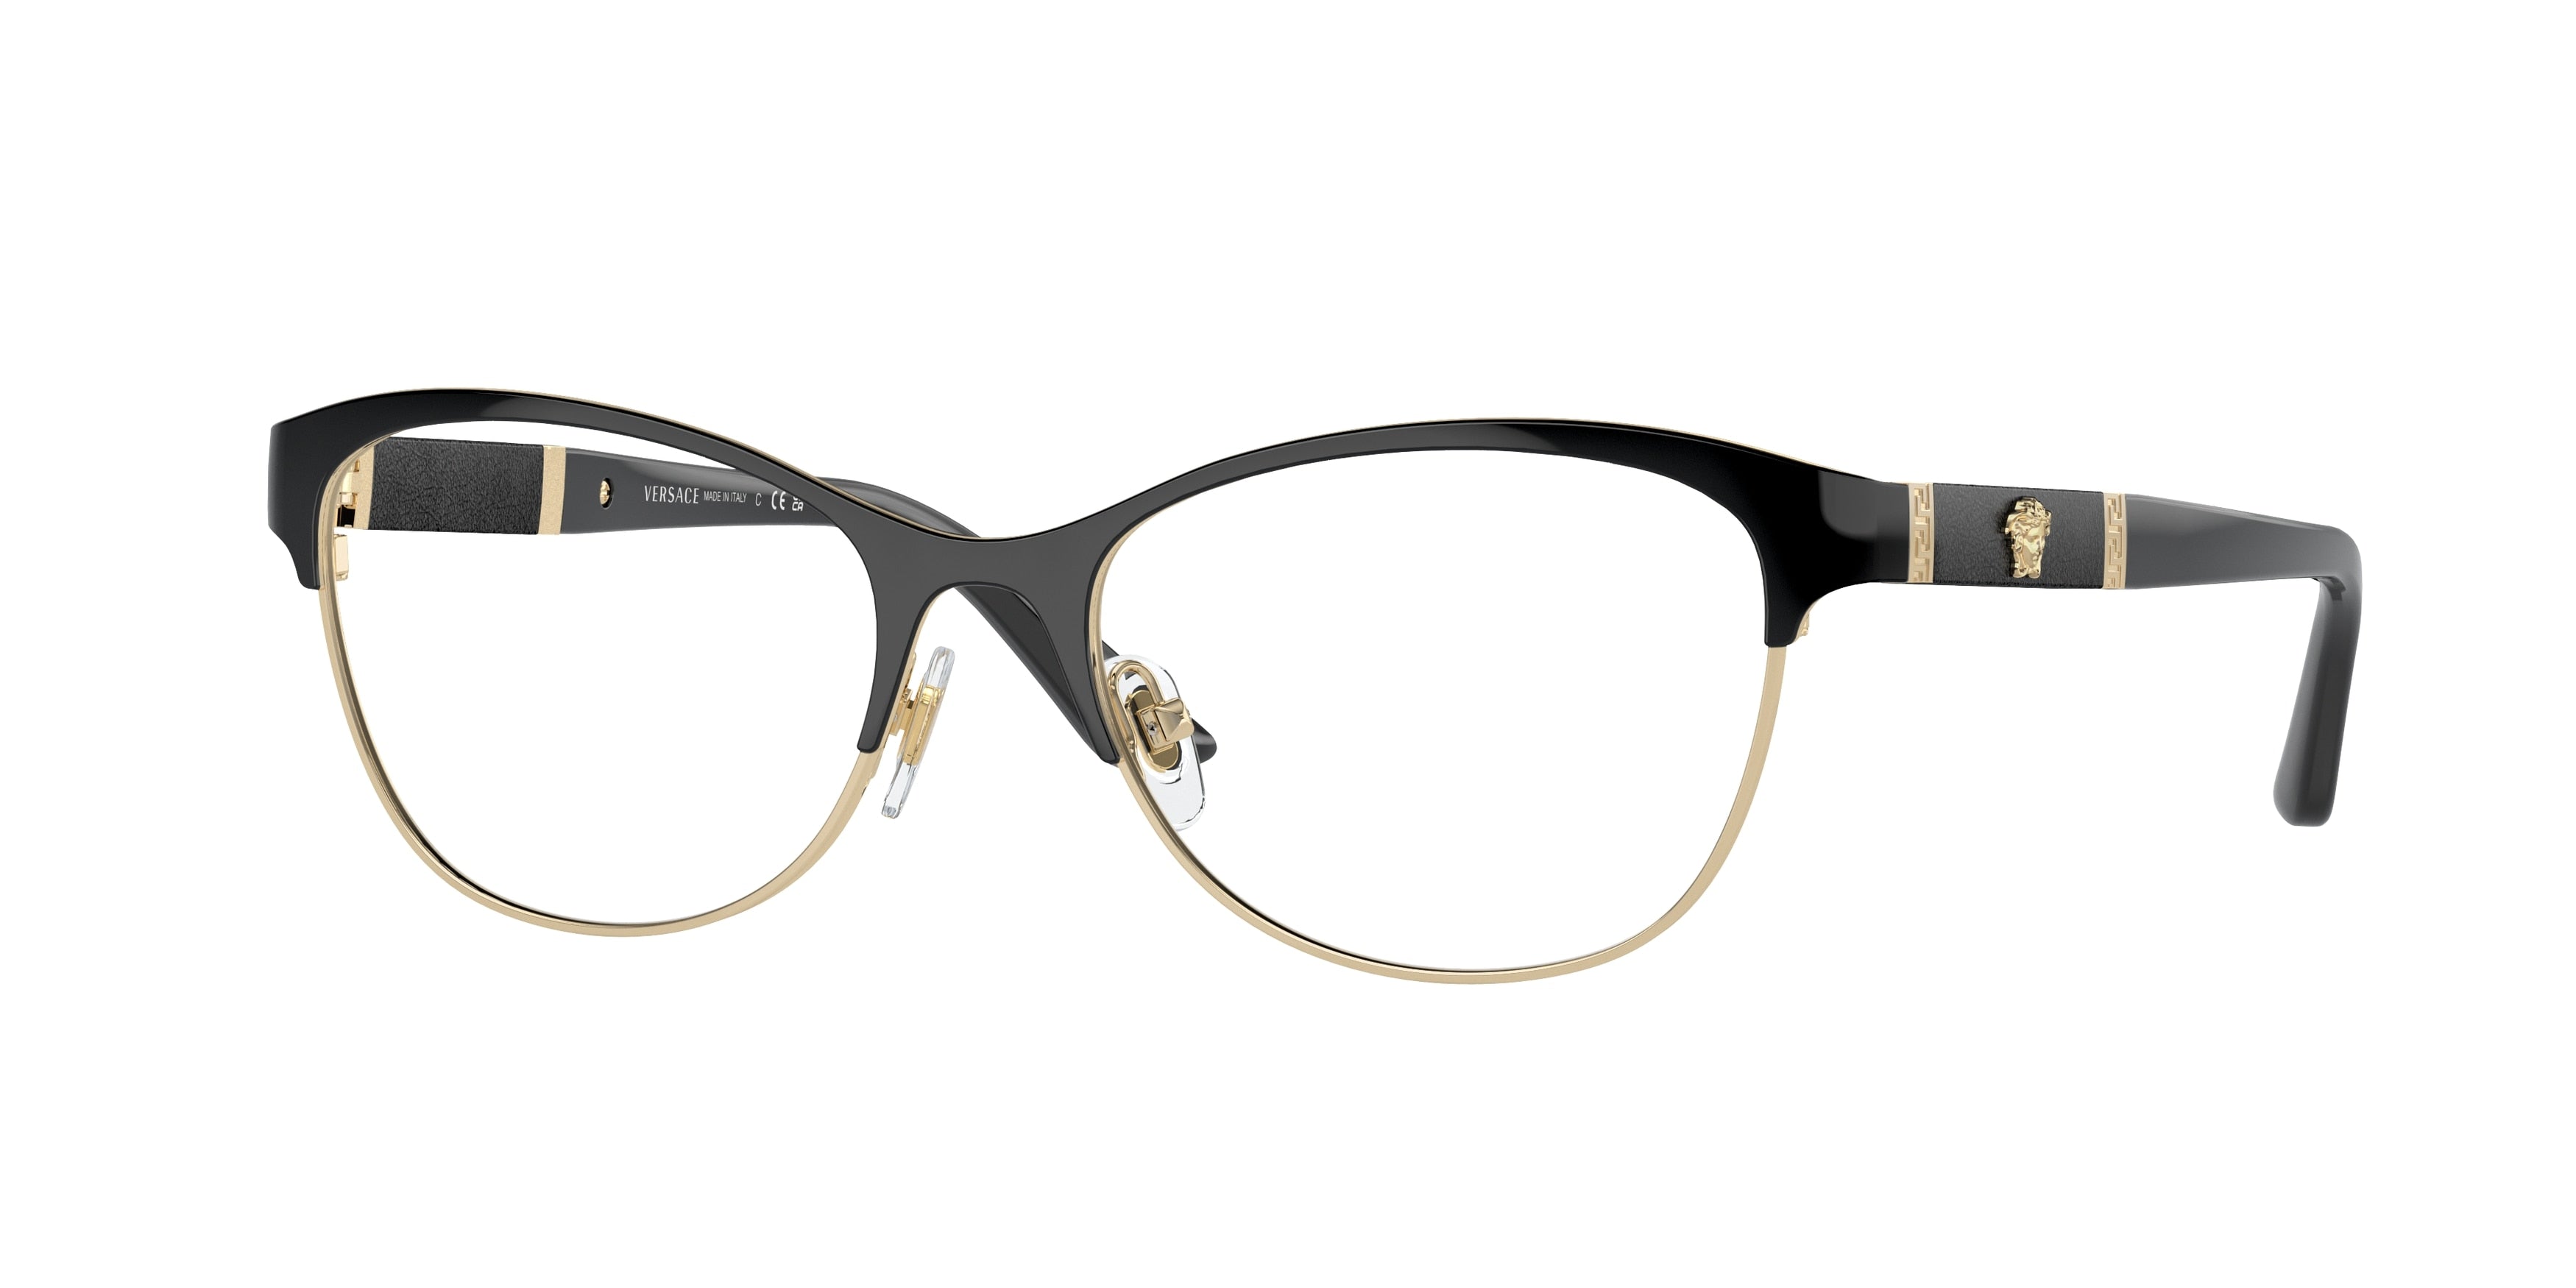 Versace VE1233Q Irregular Eyeglasses  1366-Black/Pale Gold 52-140-17 - Color Map Black